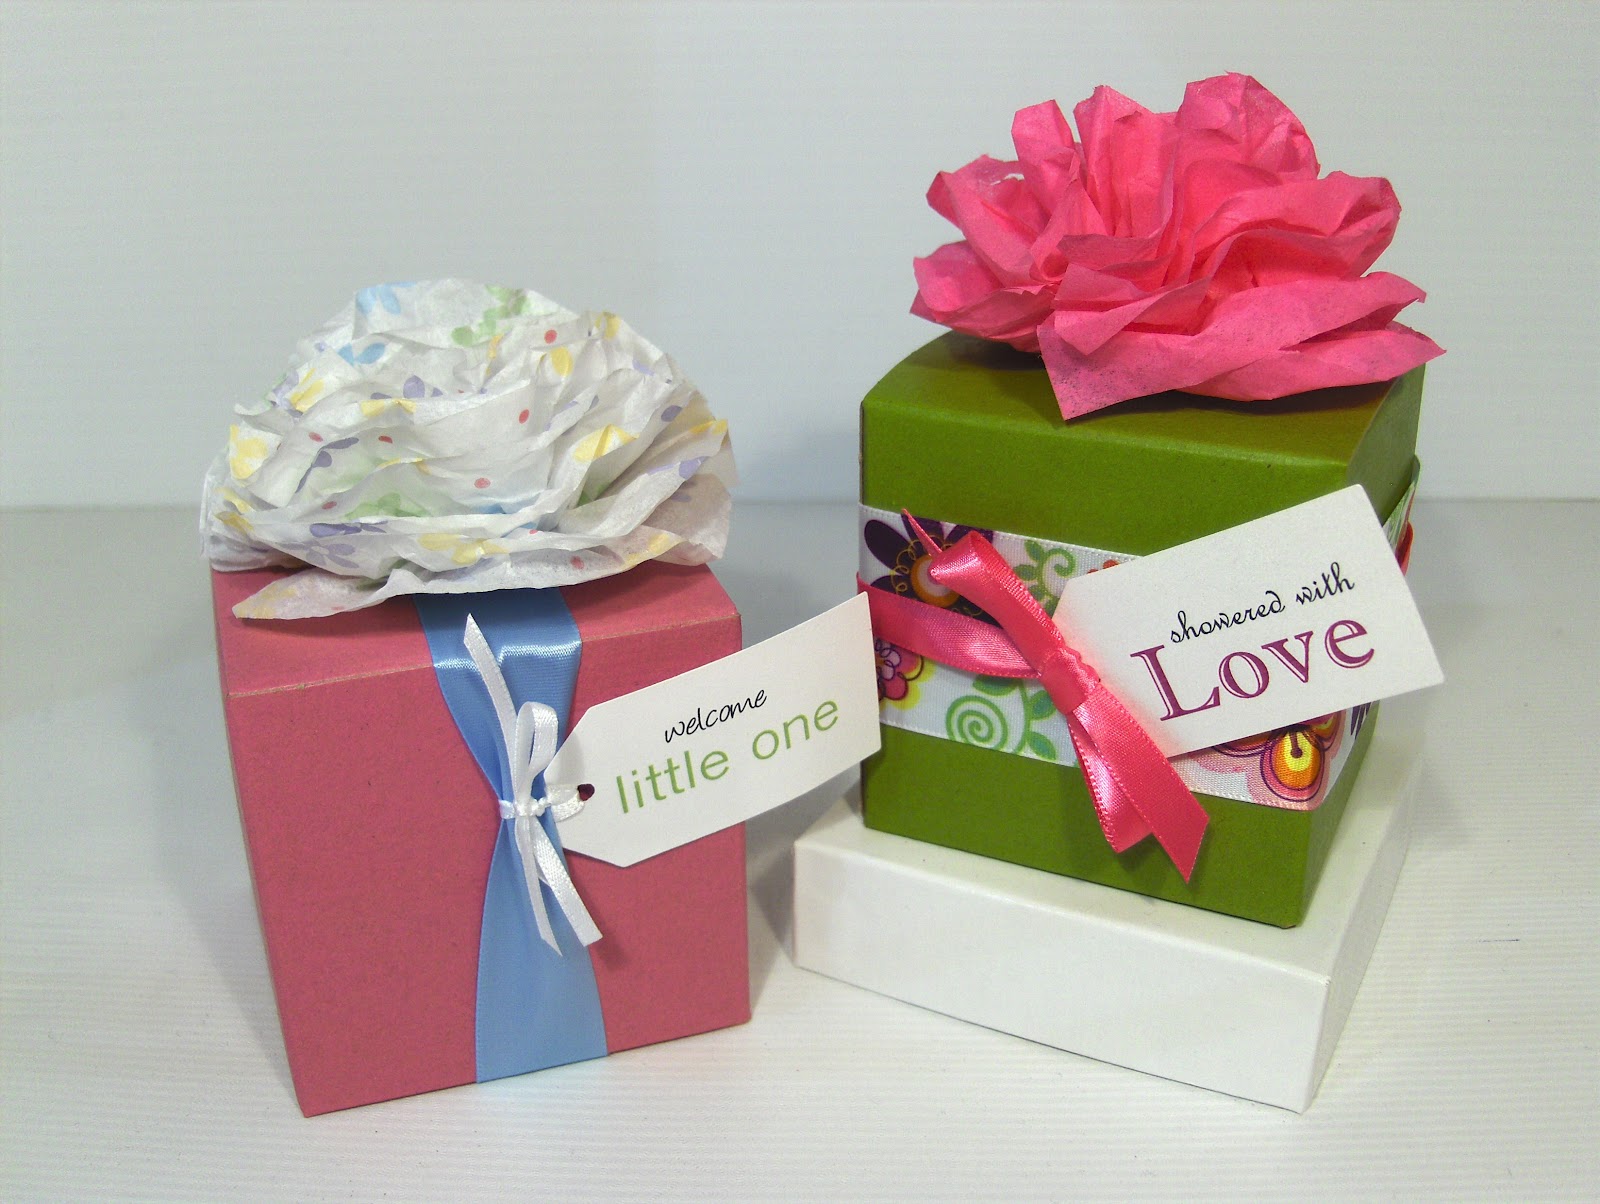 http://3.bp.blogspot.com/-q7EHRqAqaUE/T1EoQrkfiaI/AAAAAAAABlU/R1rZL2mPHm8/s1600/Mini+Tissue+Flowers+Samples+HPIM8552.JPG